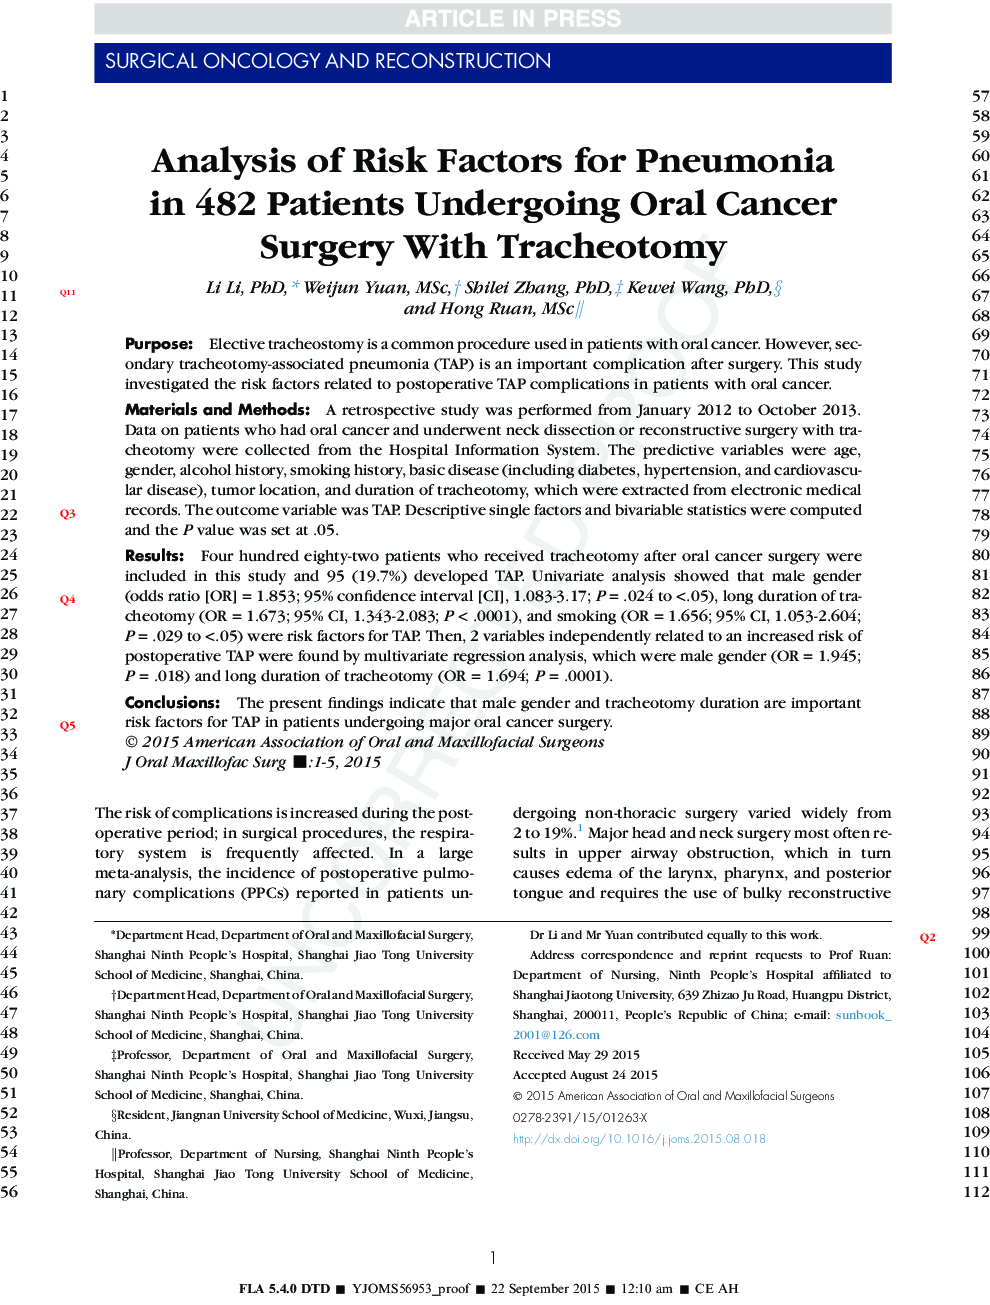 تجزیه و تحلیل عوامل خطر برای پنومونی در 482 بیمار مبتلا به سرطان دهانه رحم با تراکوتومی 